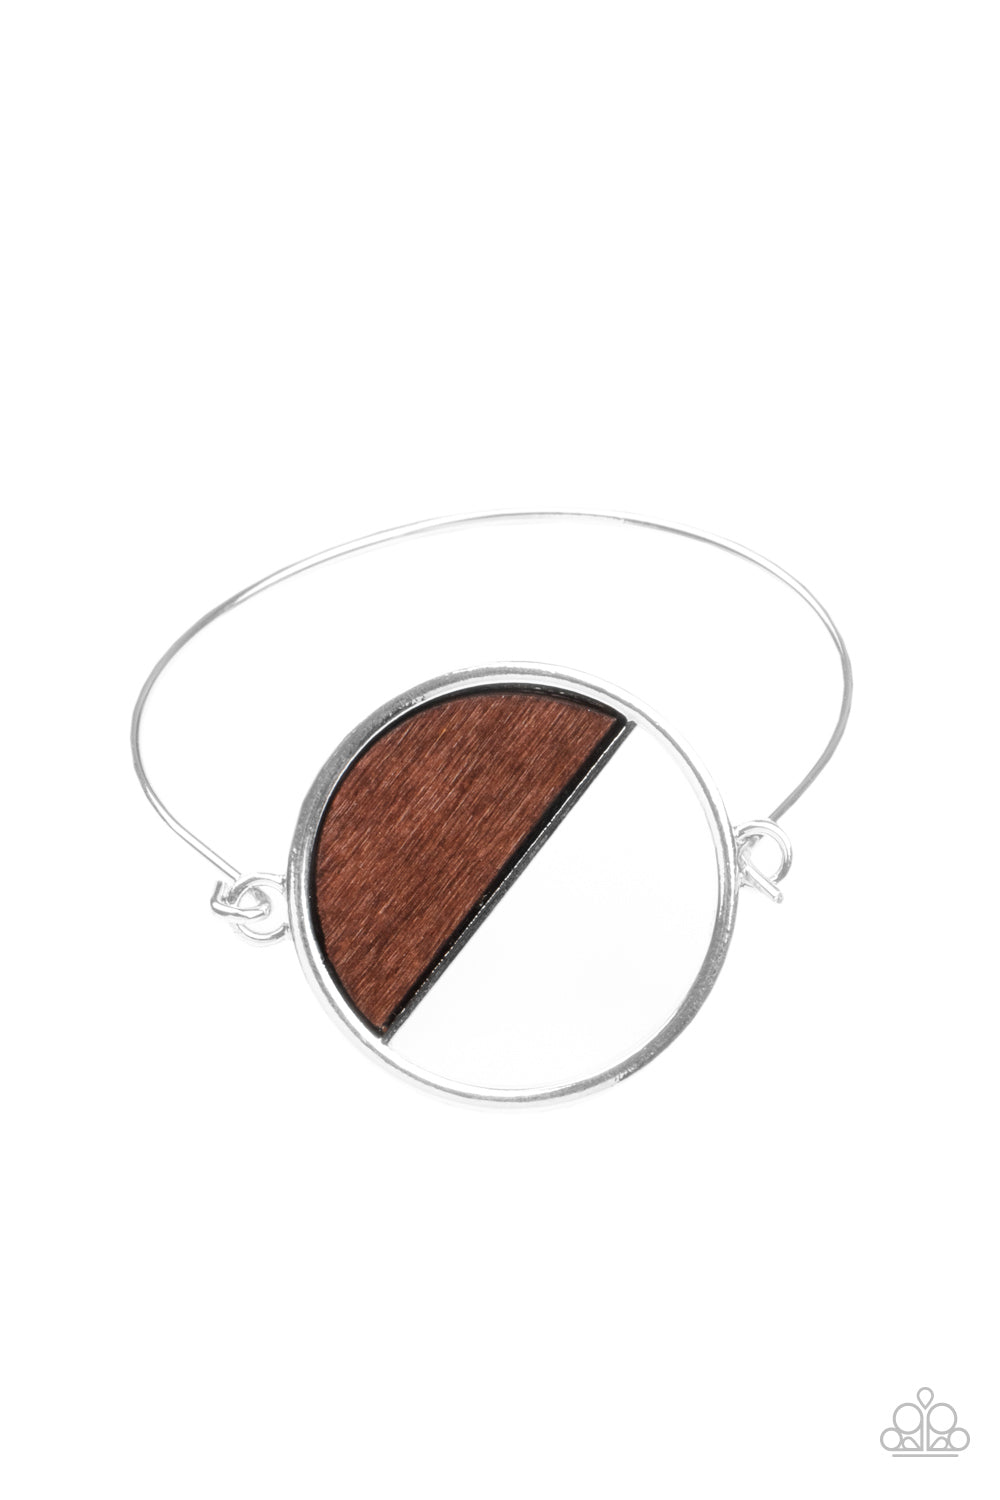 Timber Trade Bracelet - Brown